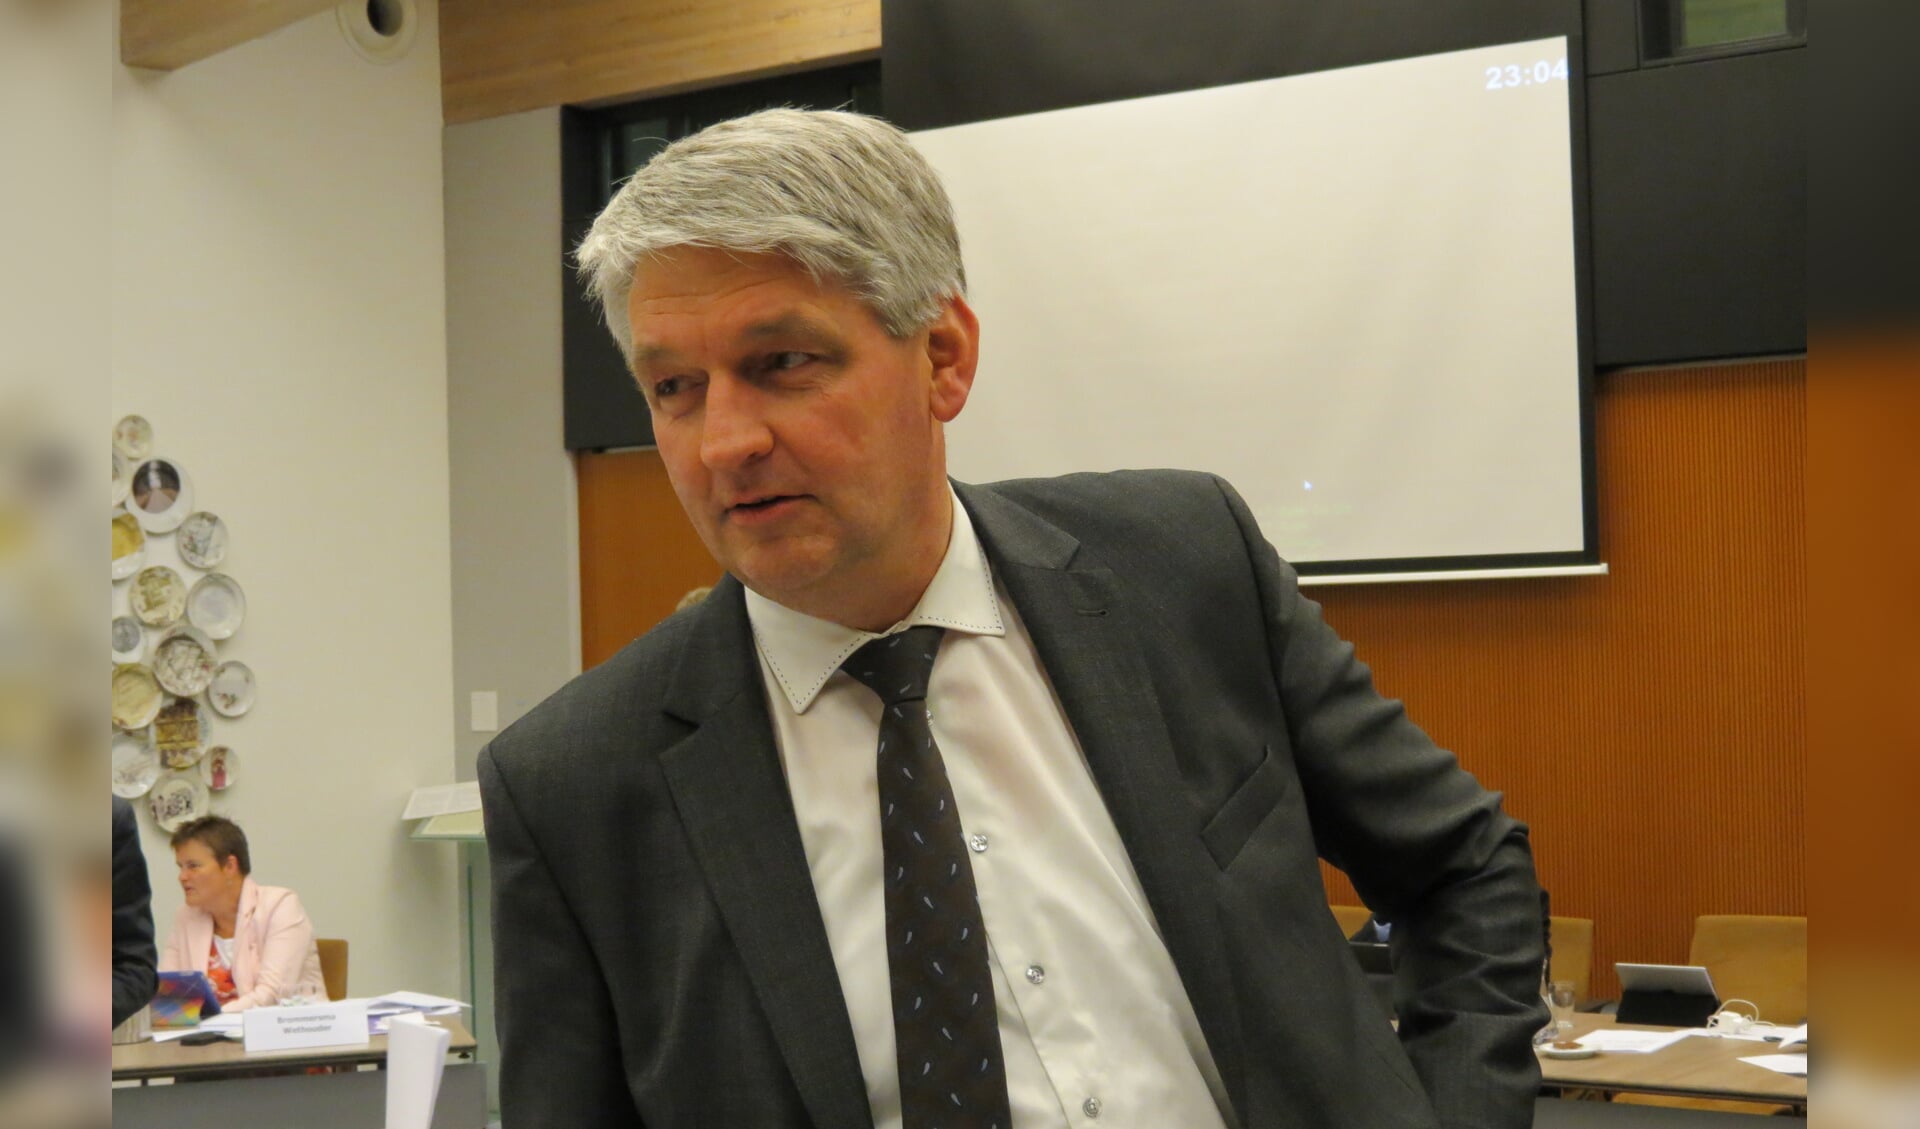 Johan Slootweg stemt vanwege de generieke bezuiniging op de formele zorg tegen de kadernota.